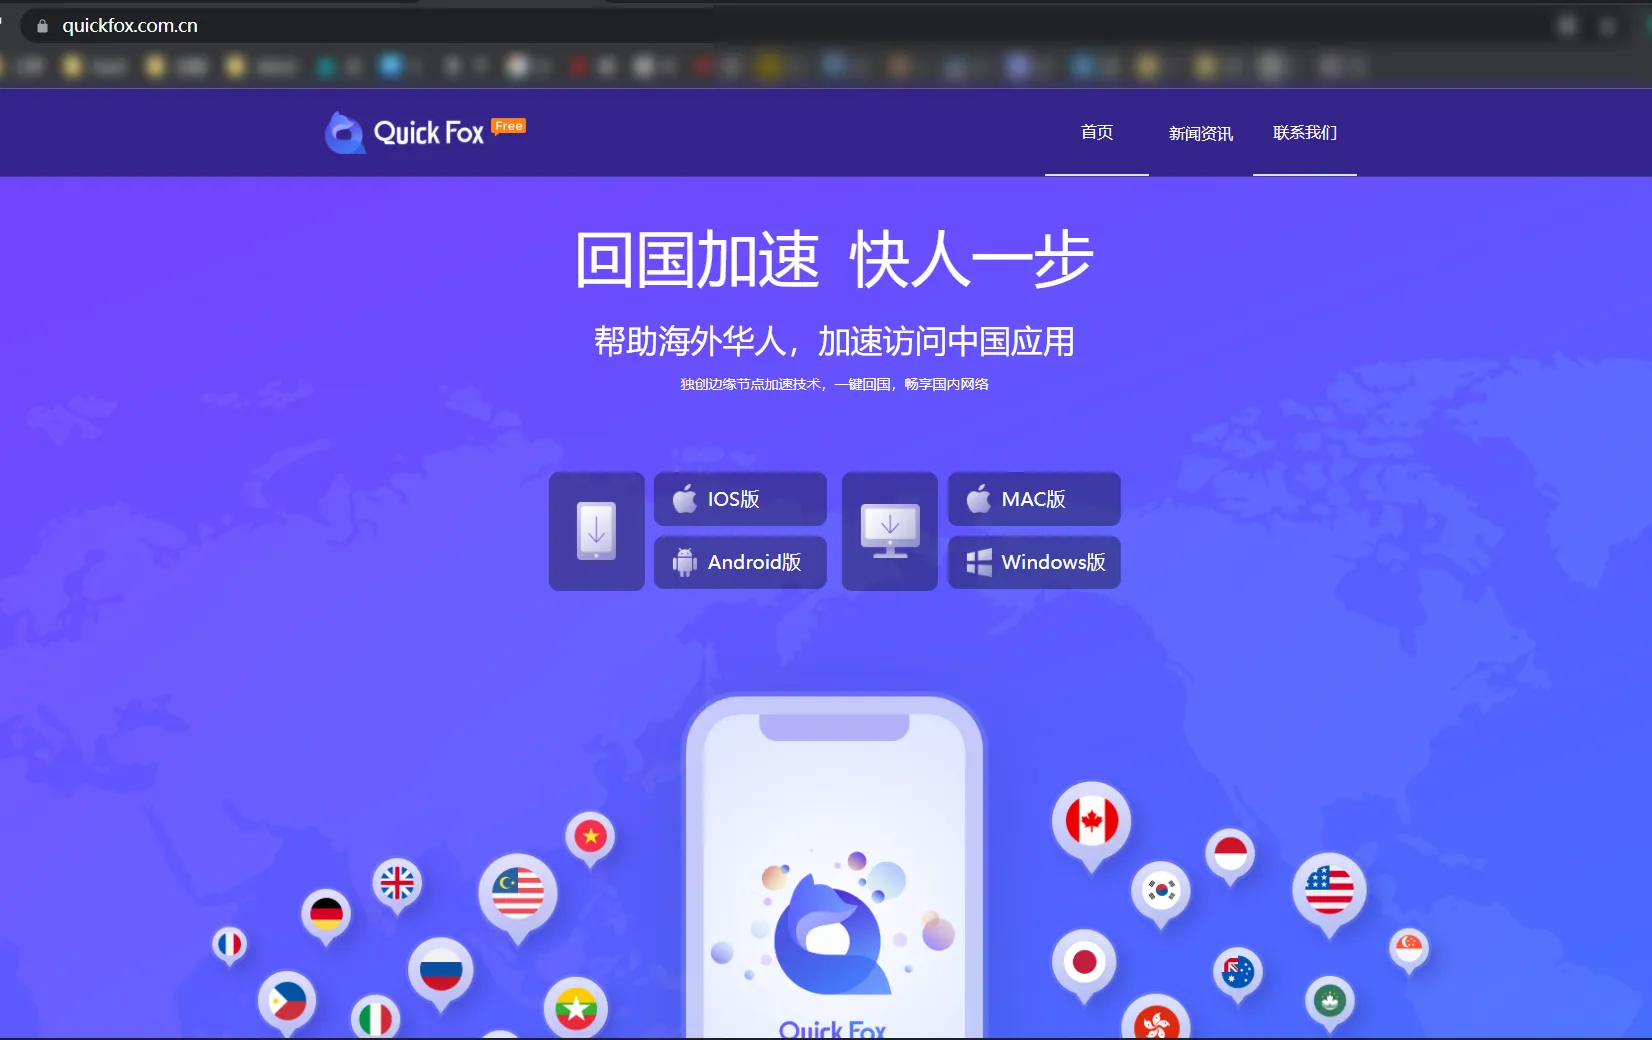 中国VPN应用Quickfox泄露100万用户的数据约5亿条记录